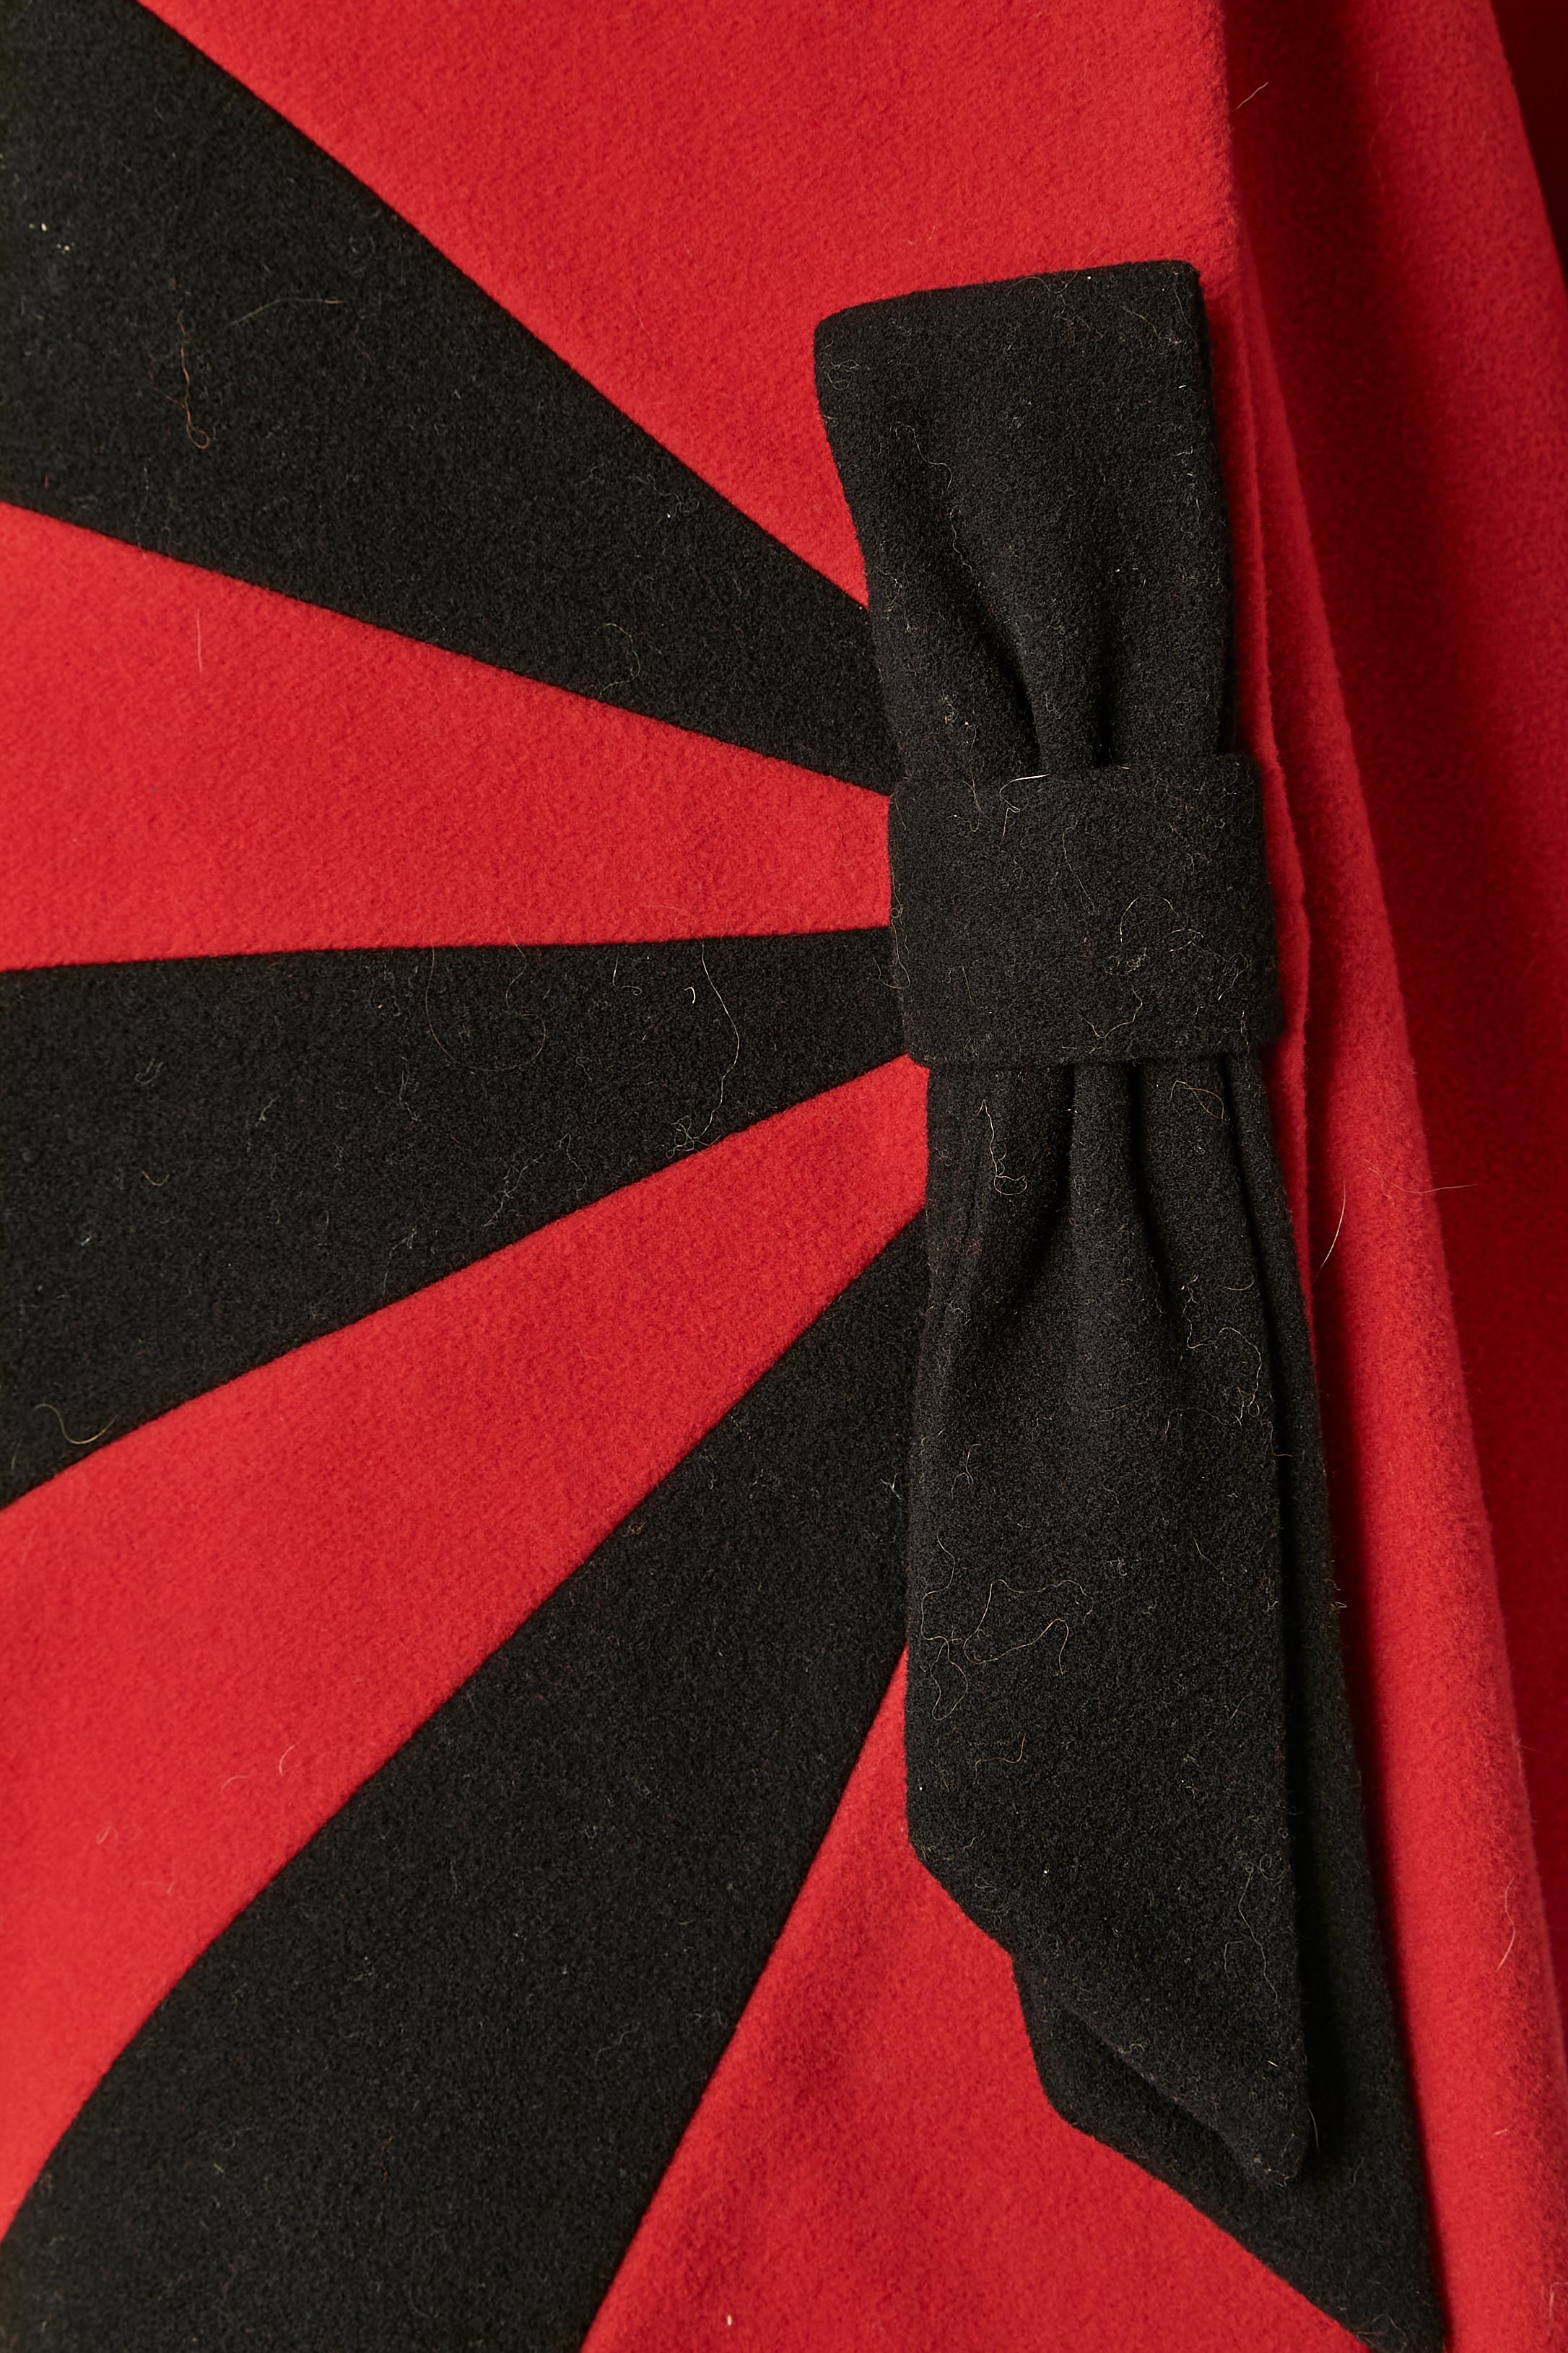 Manteau à double boutonnage en laine et cachemire rouge et noir.Manteau à double boutonnage en laine et cachemire rouge et noir. Noeud décoratif au milieu du devant
TAILLE 46 (It) 42 (Fr) L 